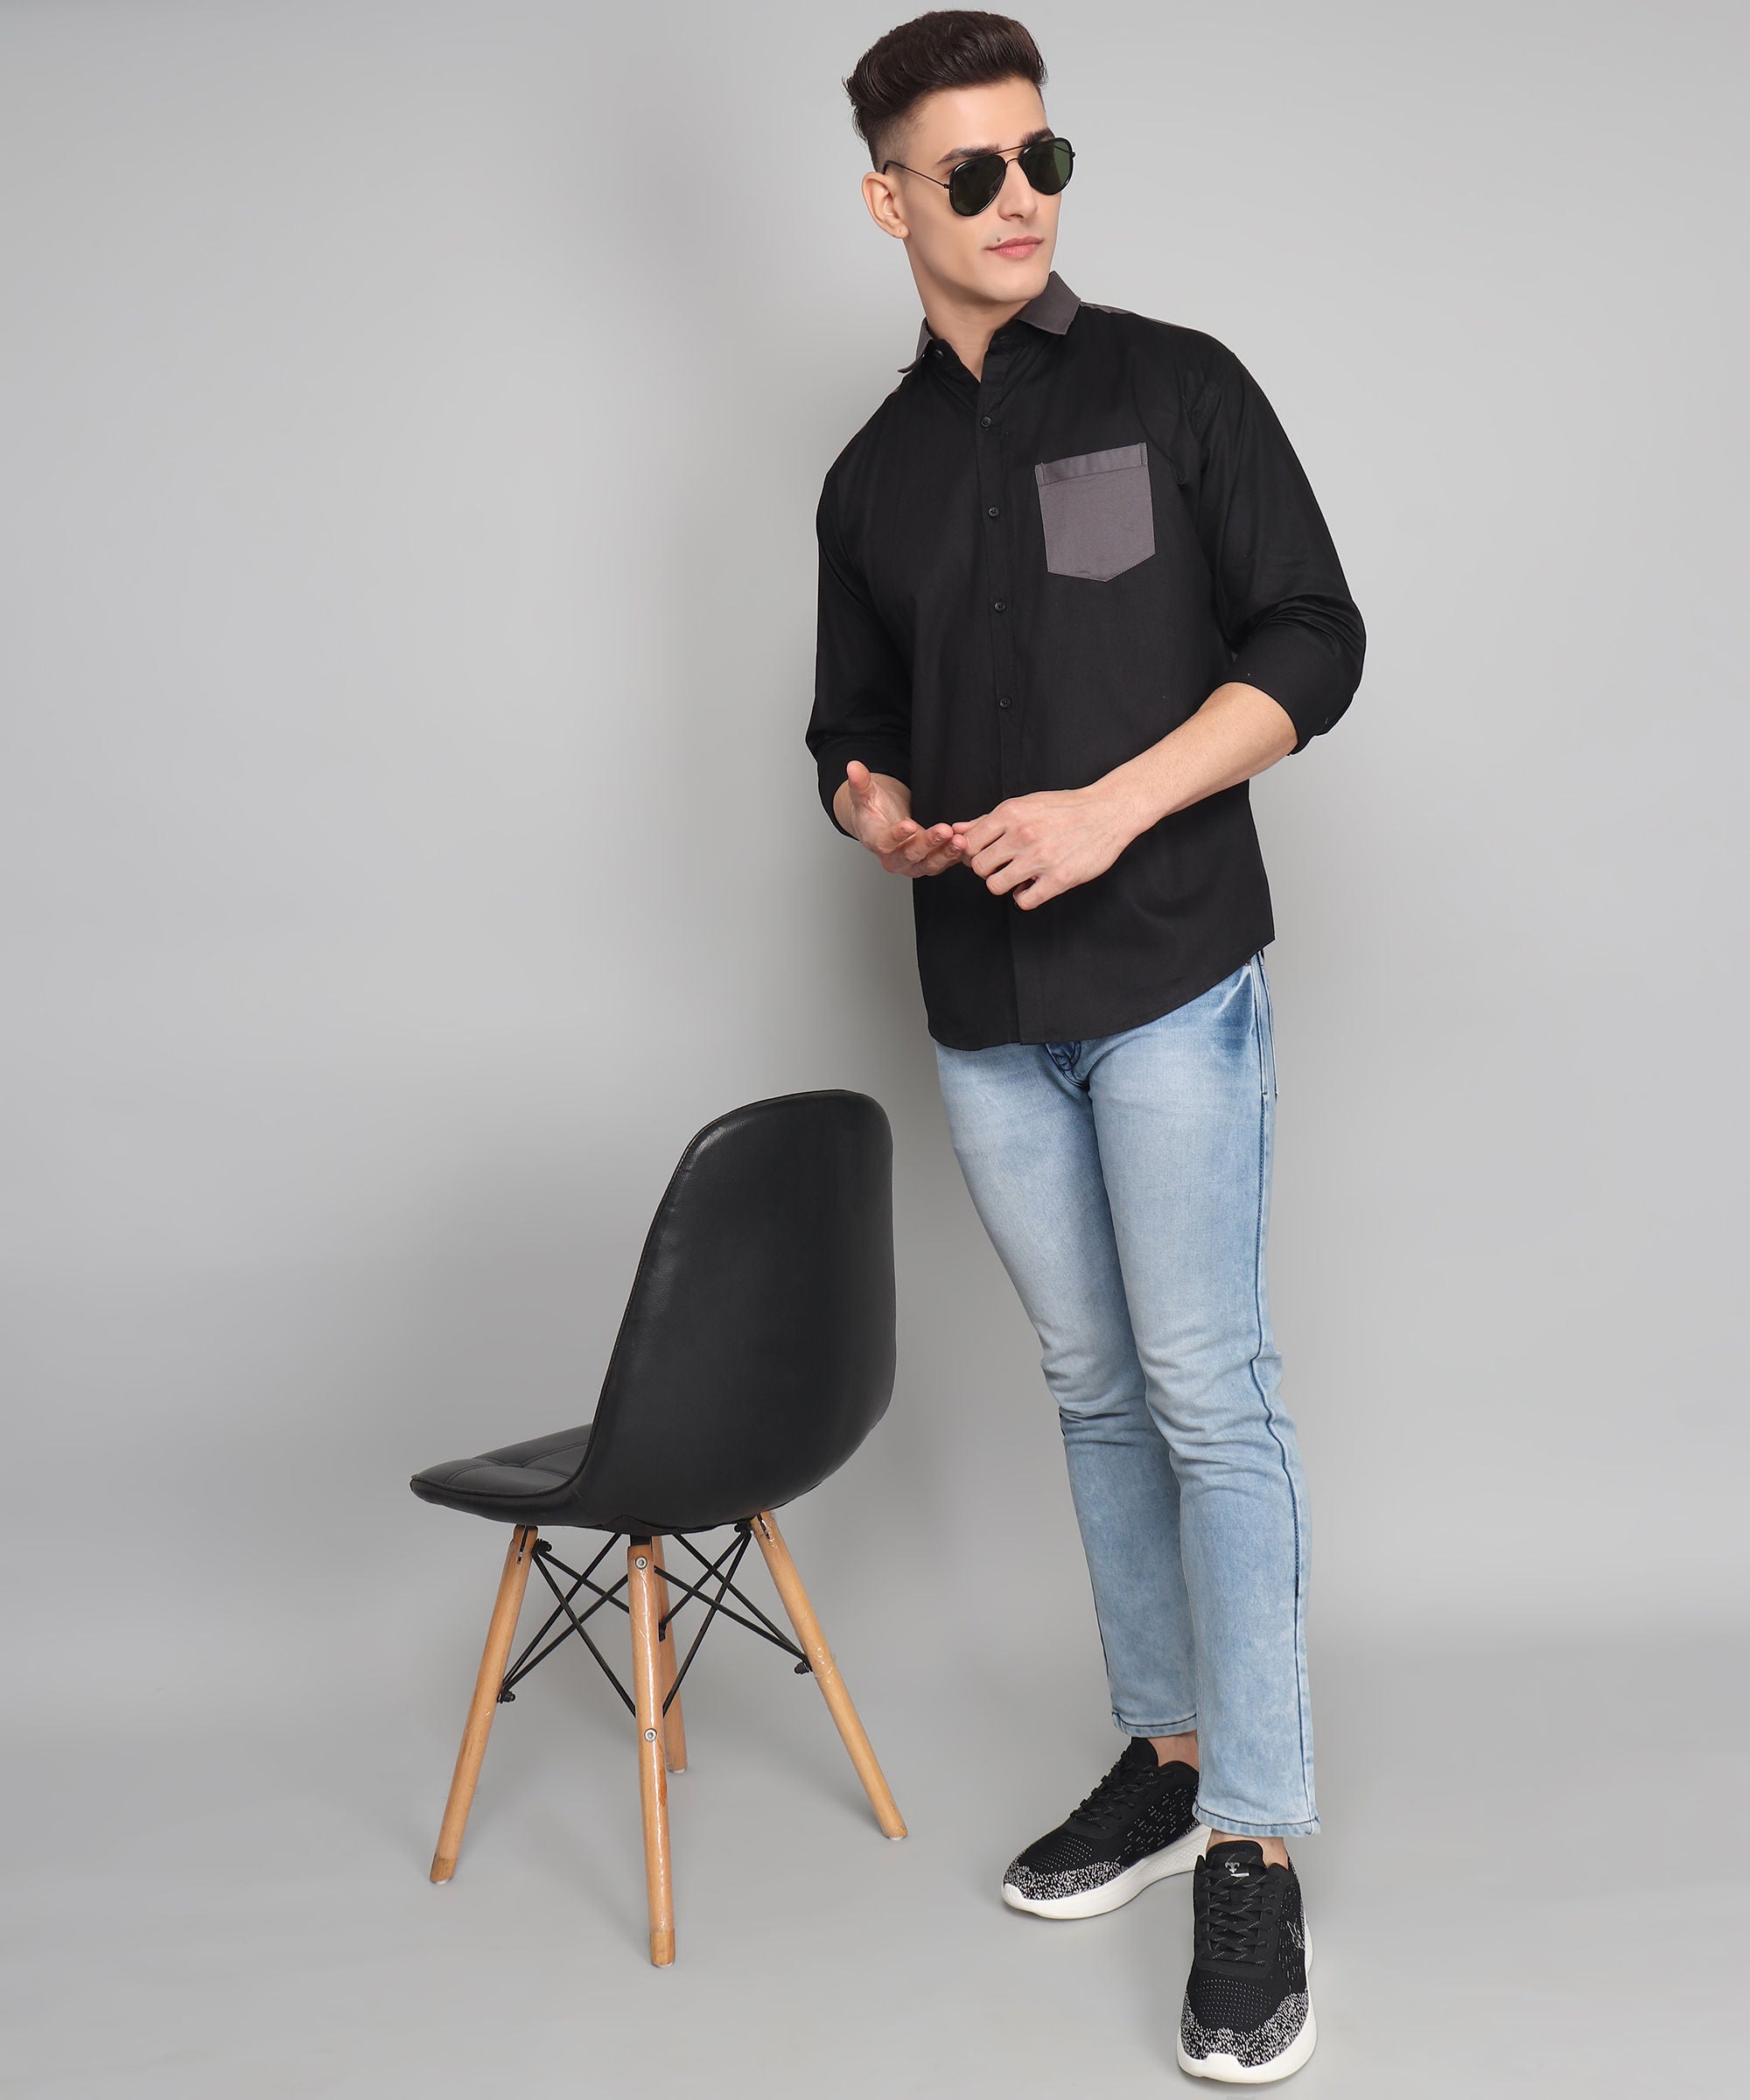 Jacob Premium Black Solid Cotton Dress Shirt for Men